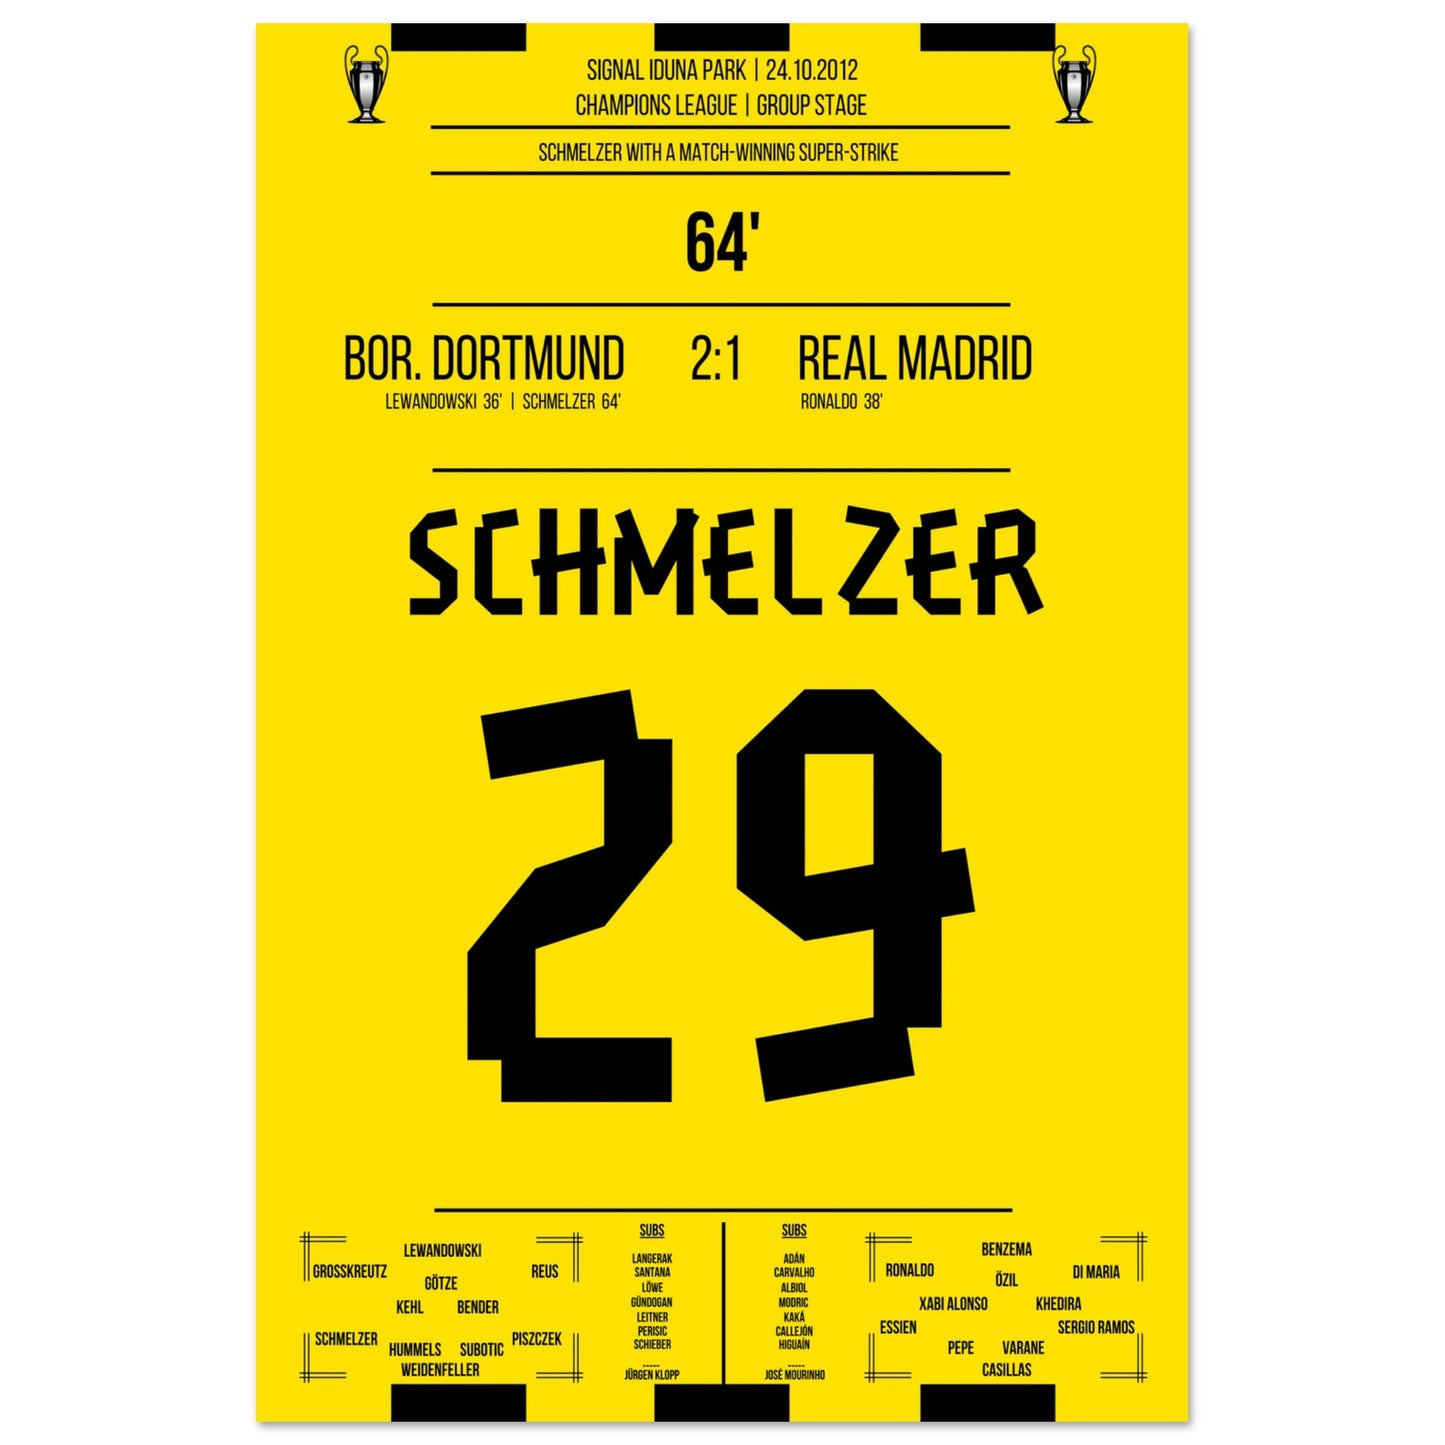 Schmelzer's linke Klebe gegen Real in der Champions League 2012 60x90-cm-24x36-Ohne-Rahmen